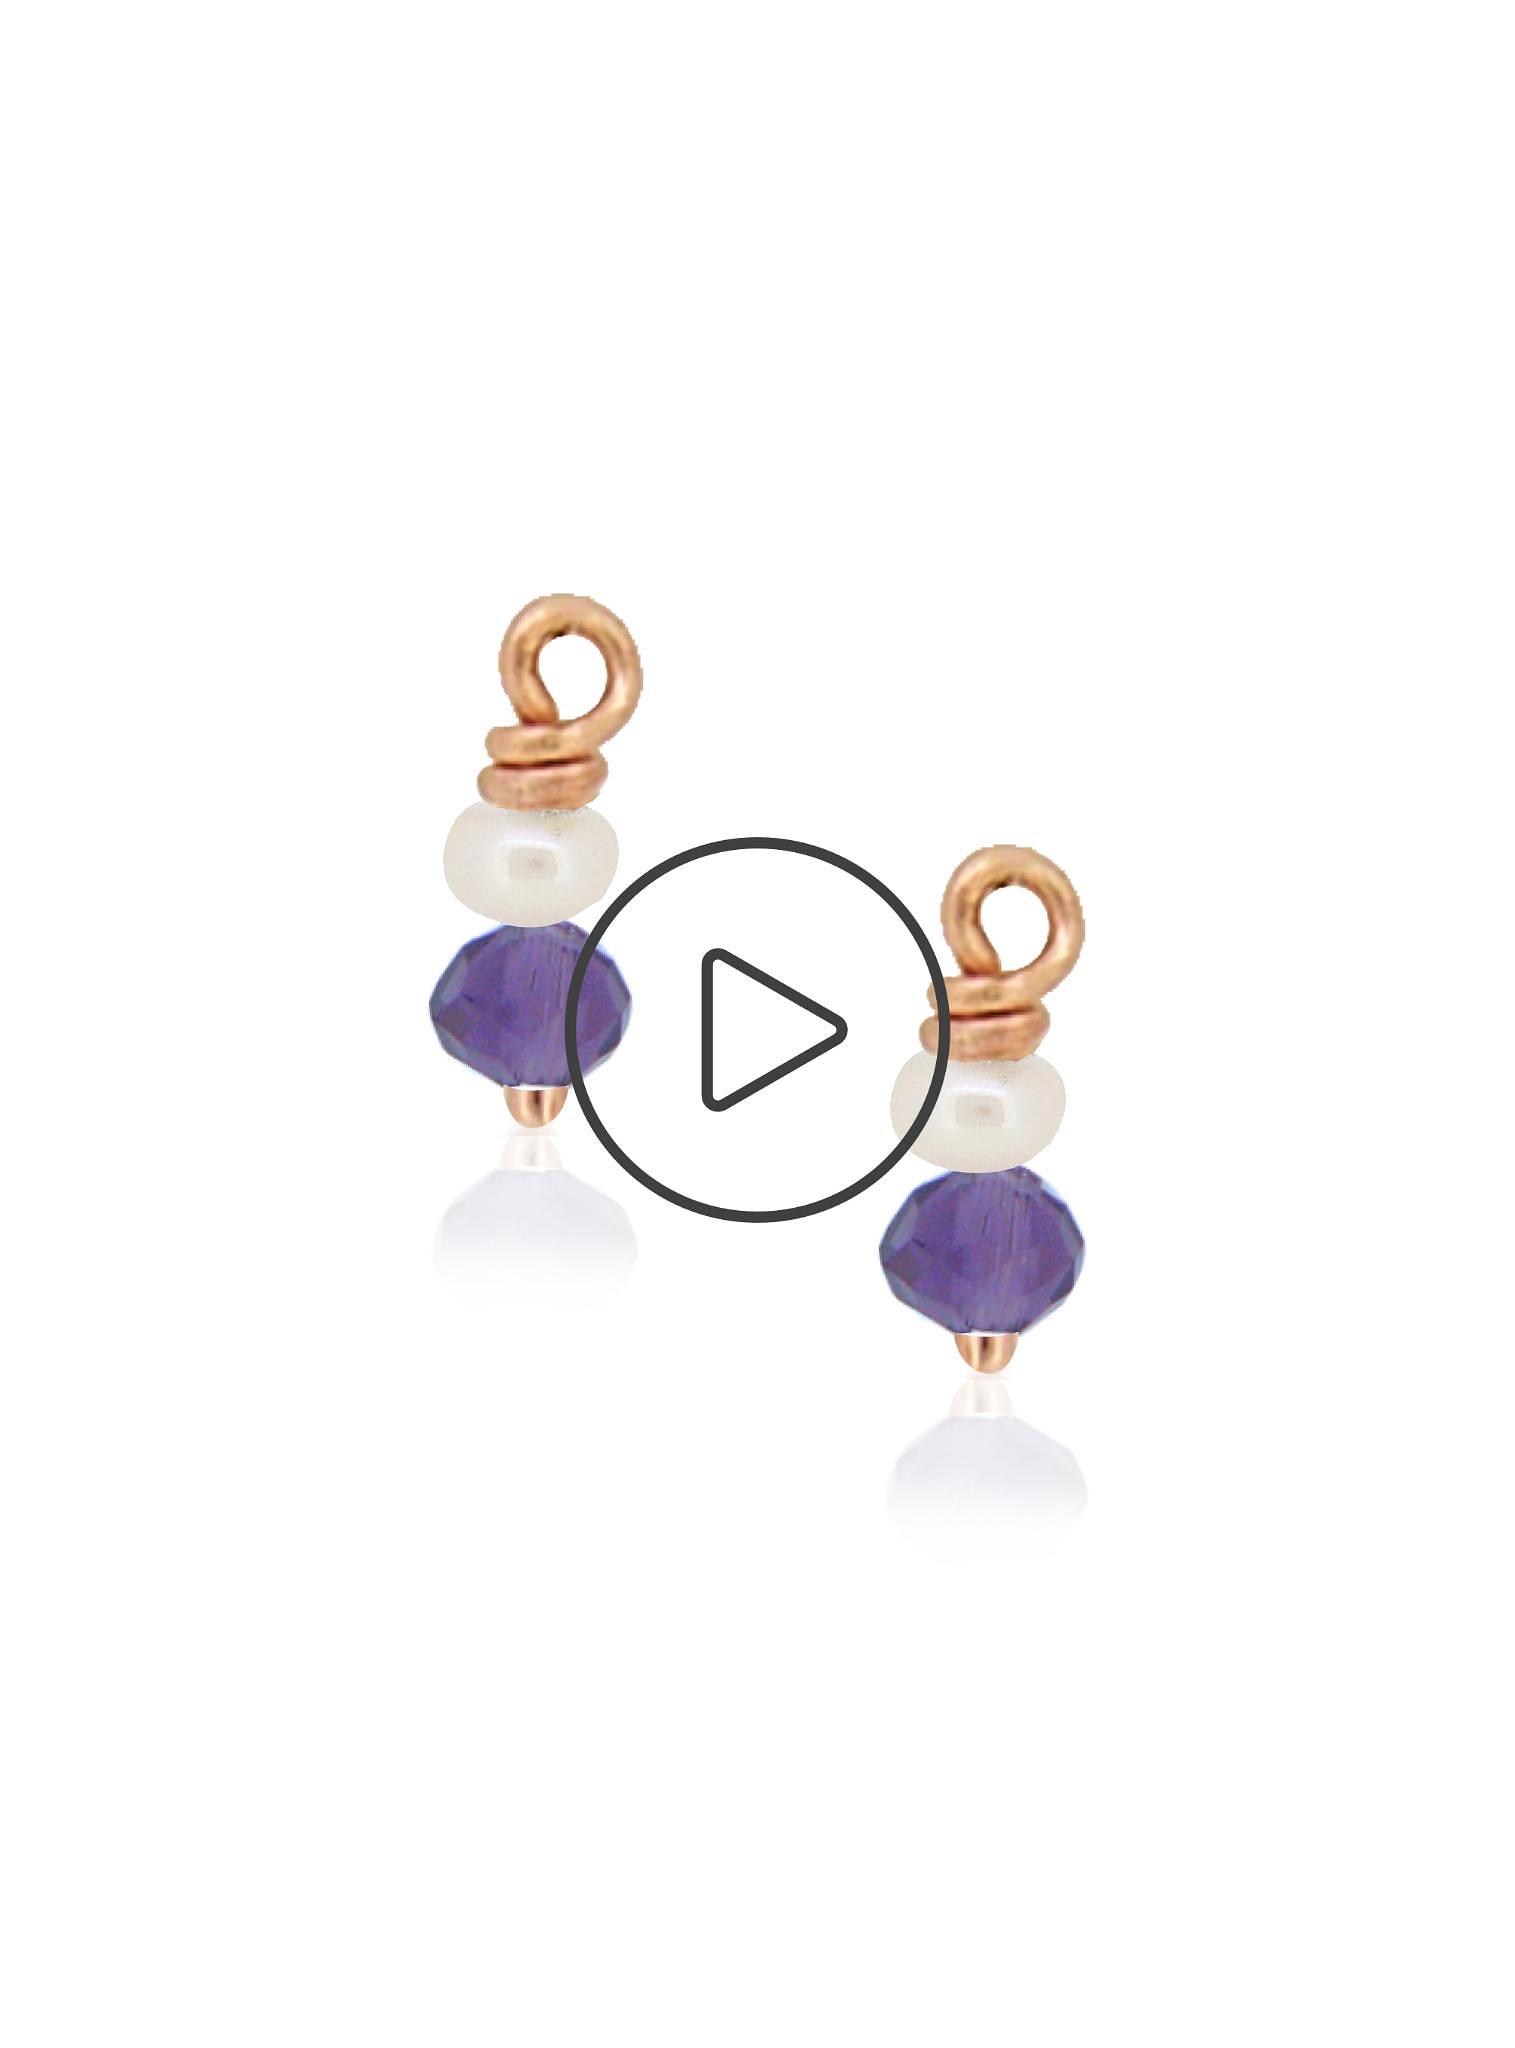 Nicola Design Pear Shaped & Princess Cut Long Drops Amethyst and Pearl  Earrings Luxe Tear Drop Earrings 18K Solid Gold Earrings - Oveela Jewelry